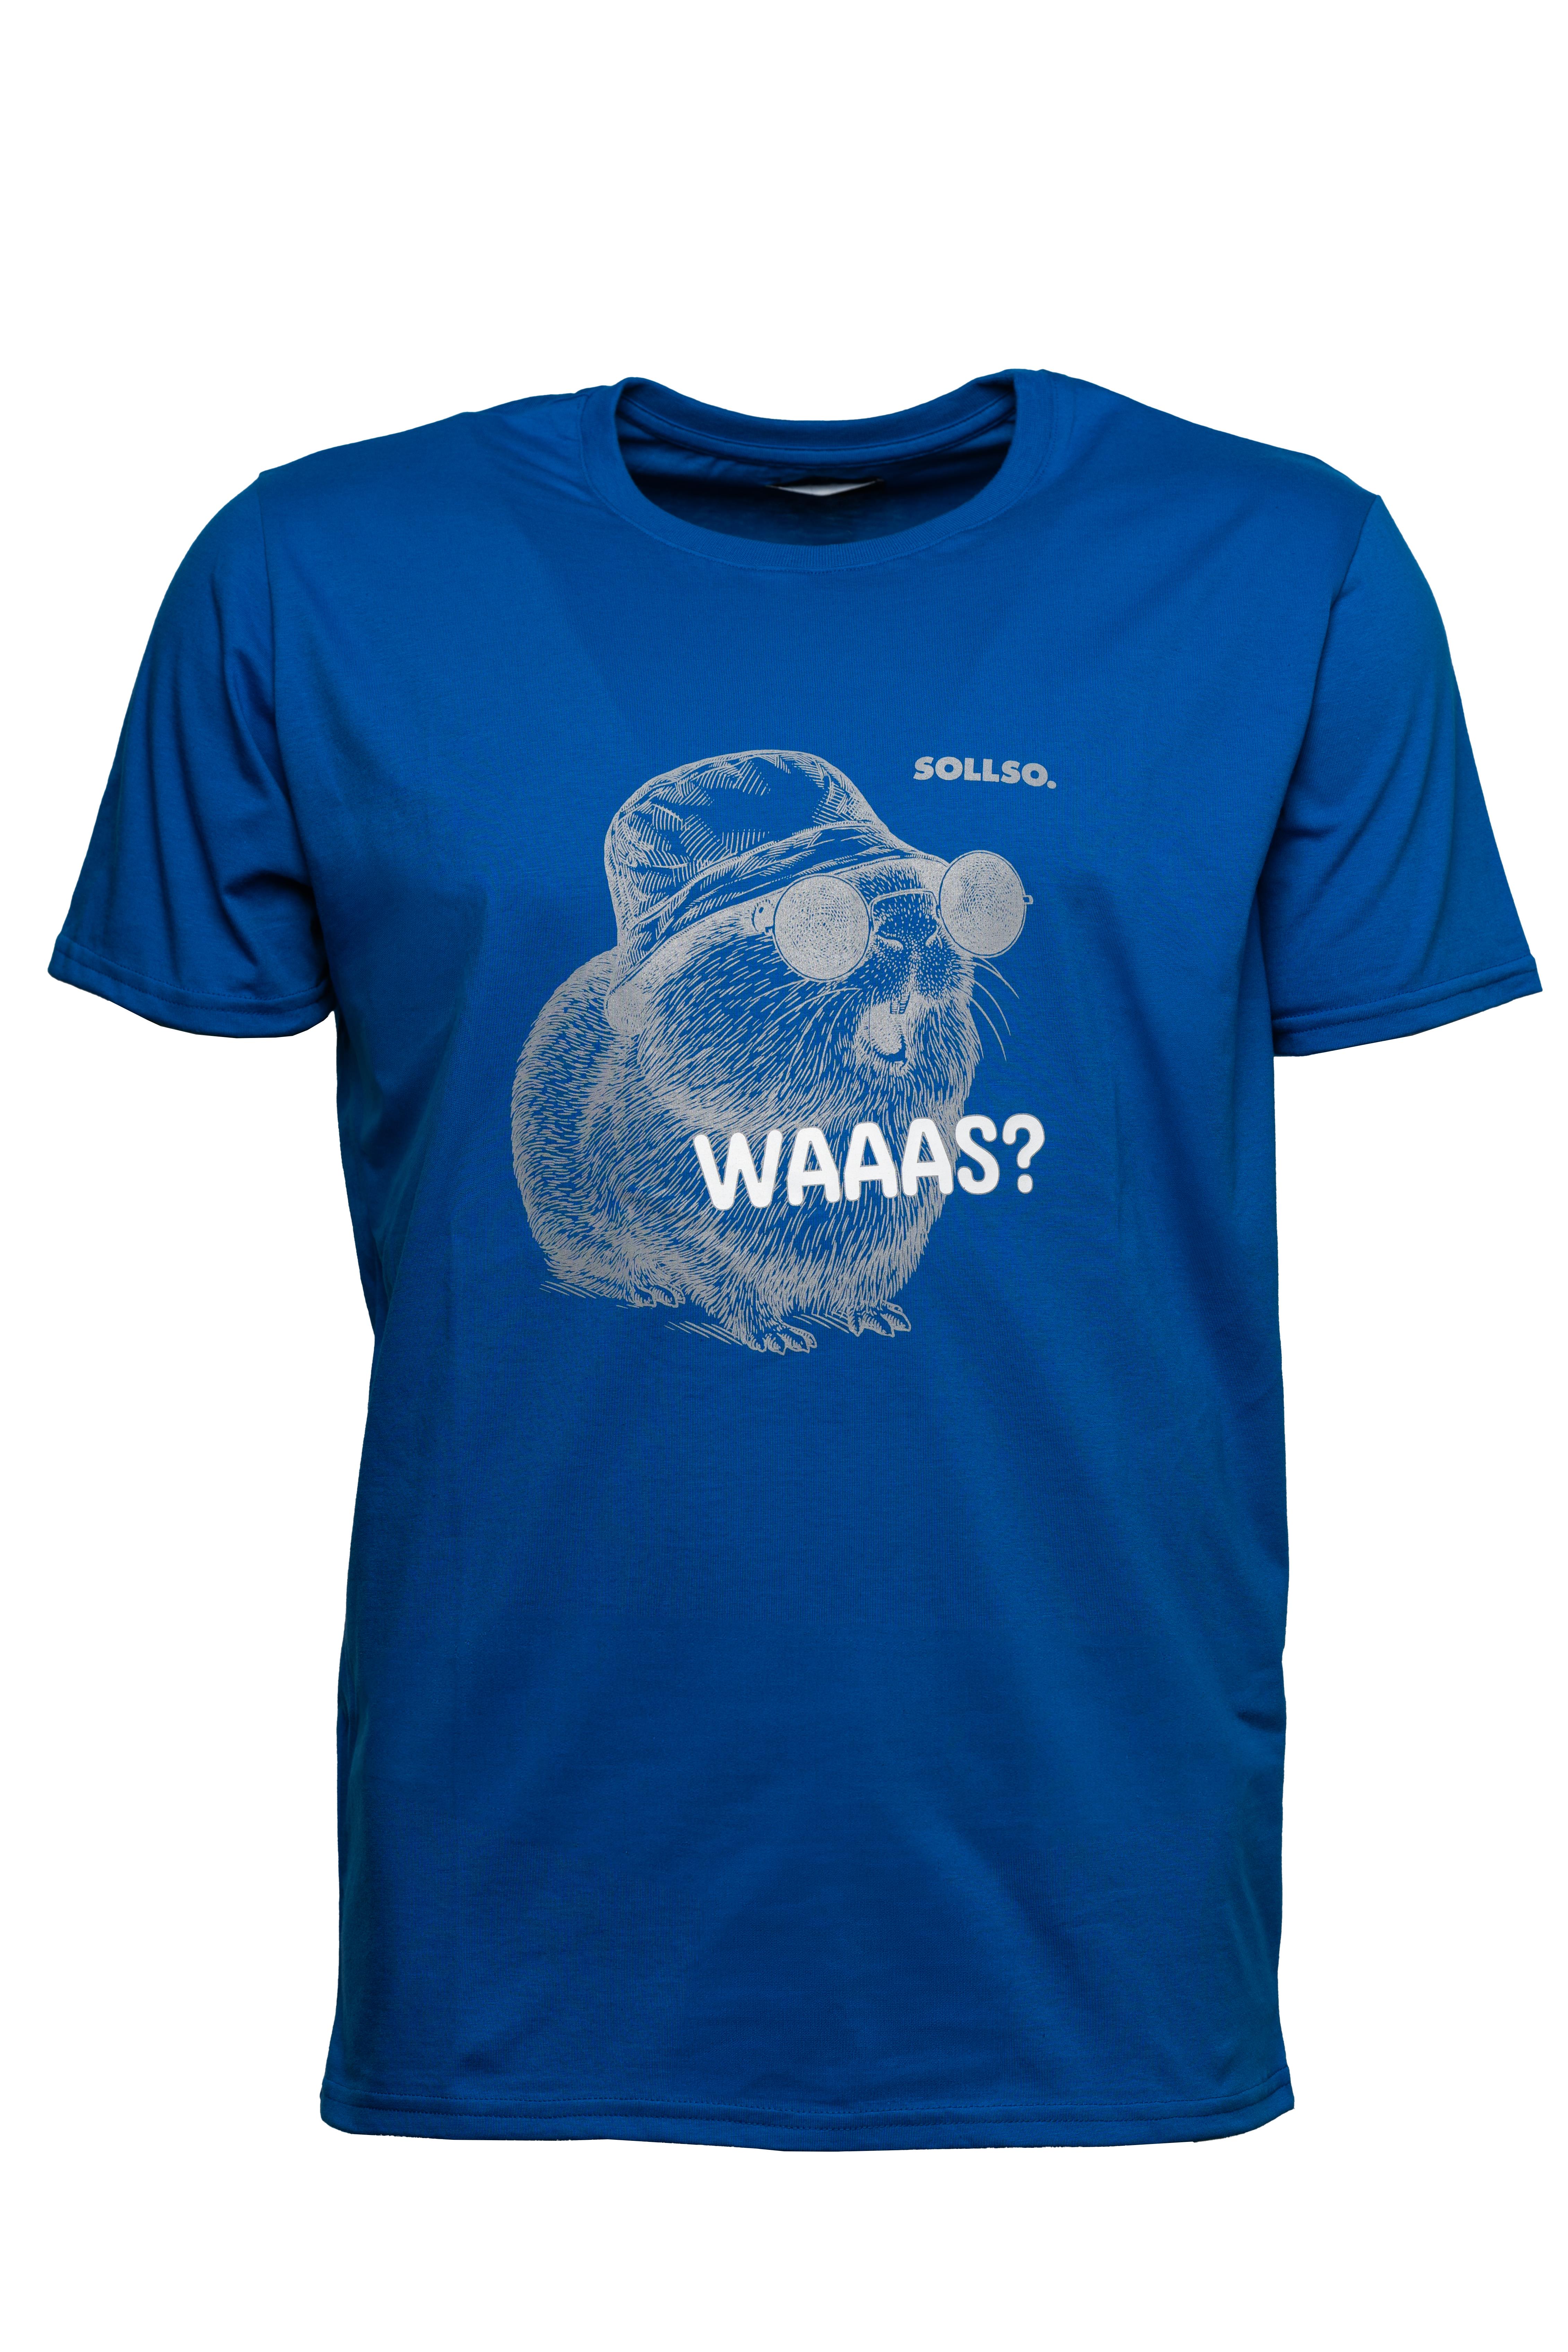 SOLLSO. T-Shirt "Guinea Pig" Farbe Ocean Blue, Größe S